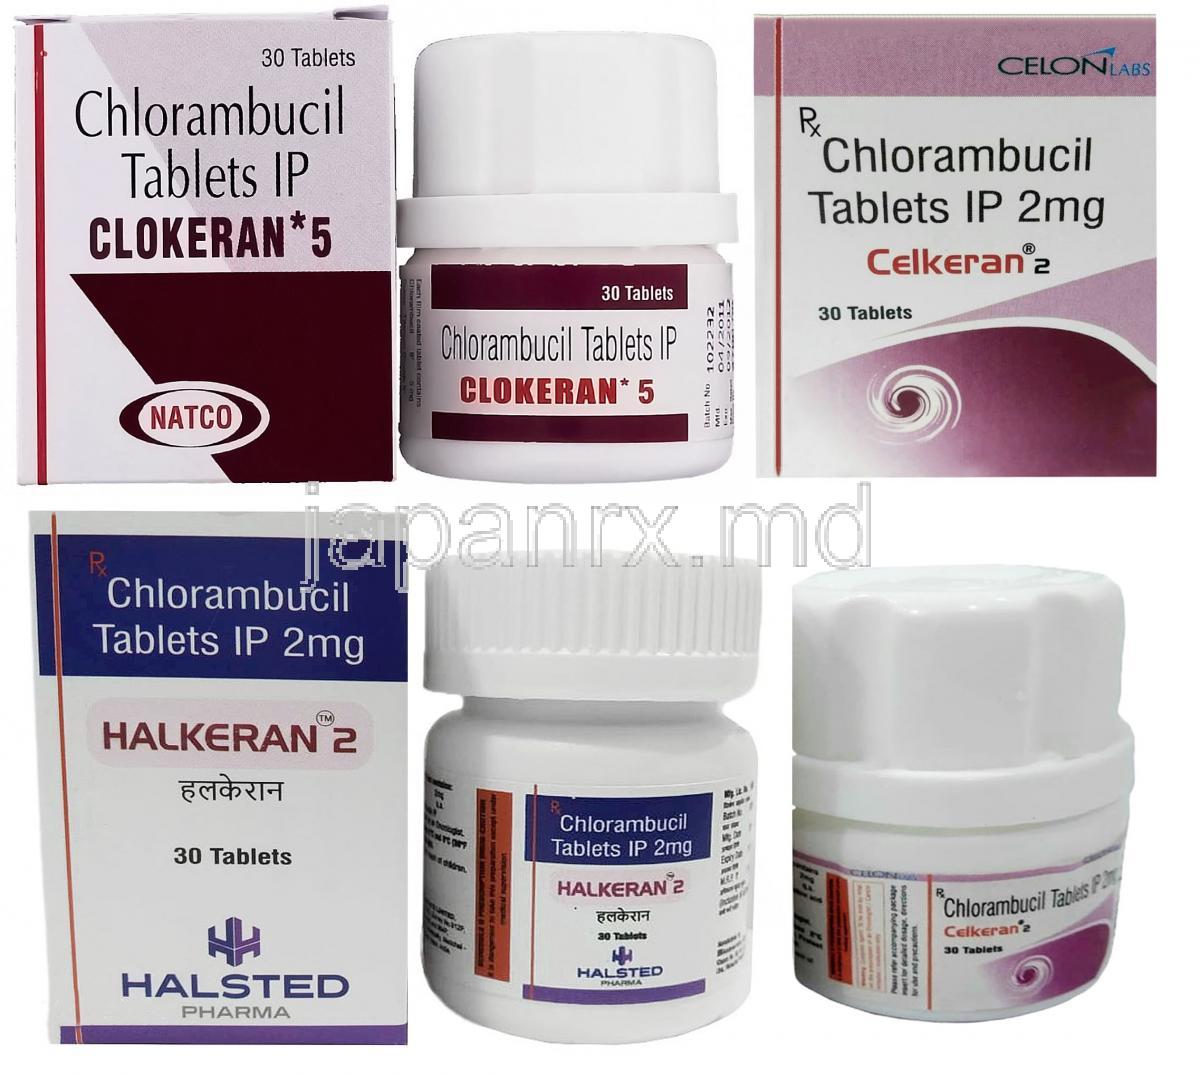 クロークラン 5 Clokeran 5, アムシル ジェネリック, クロラムプシル 5mg (NATCO)